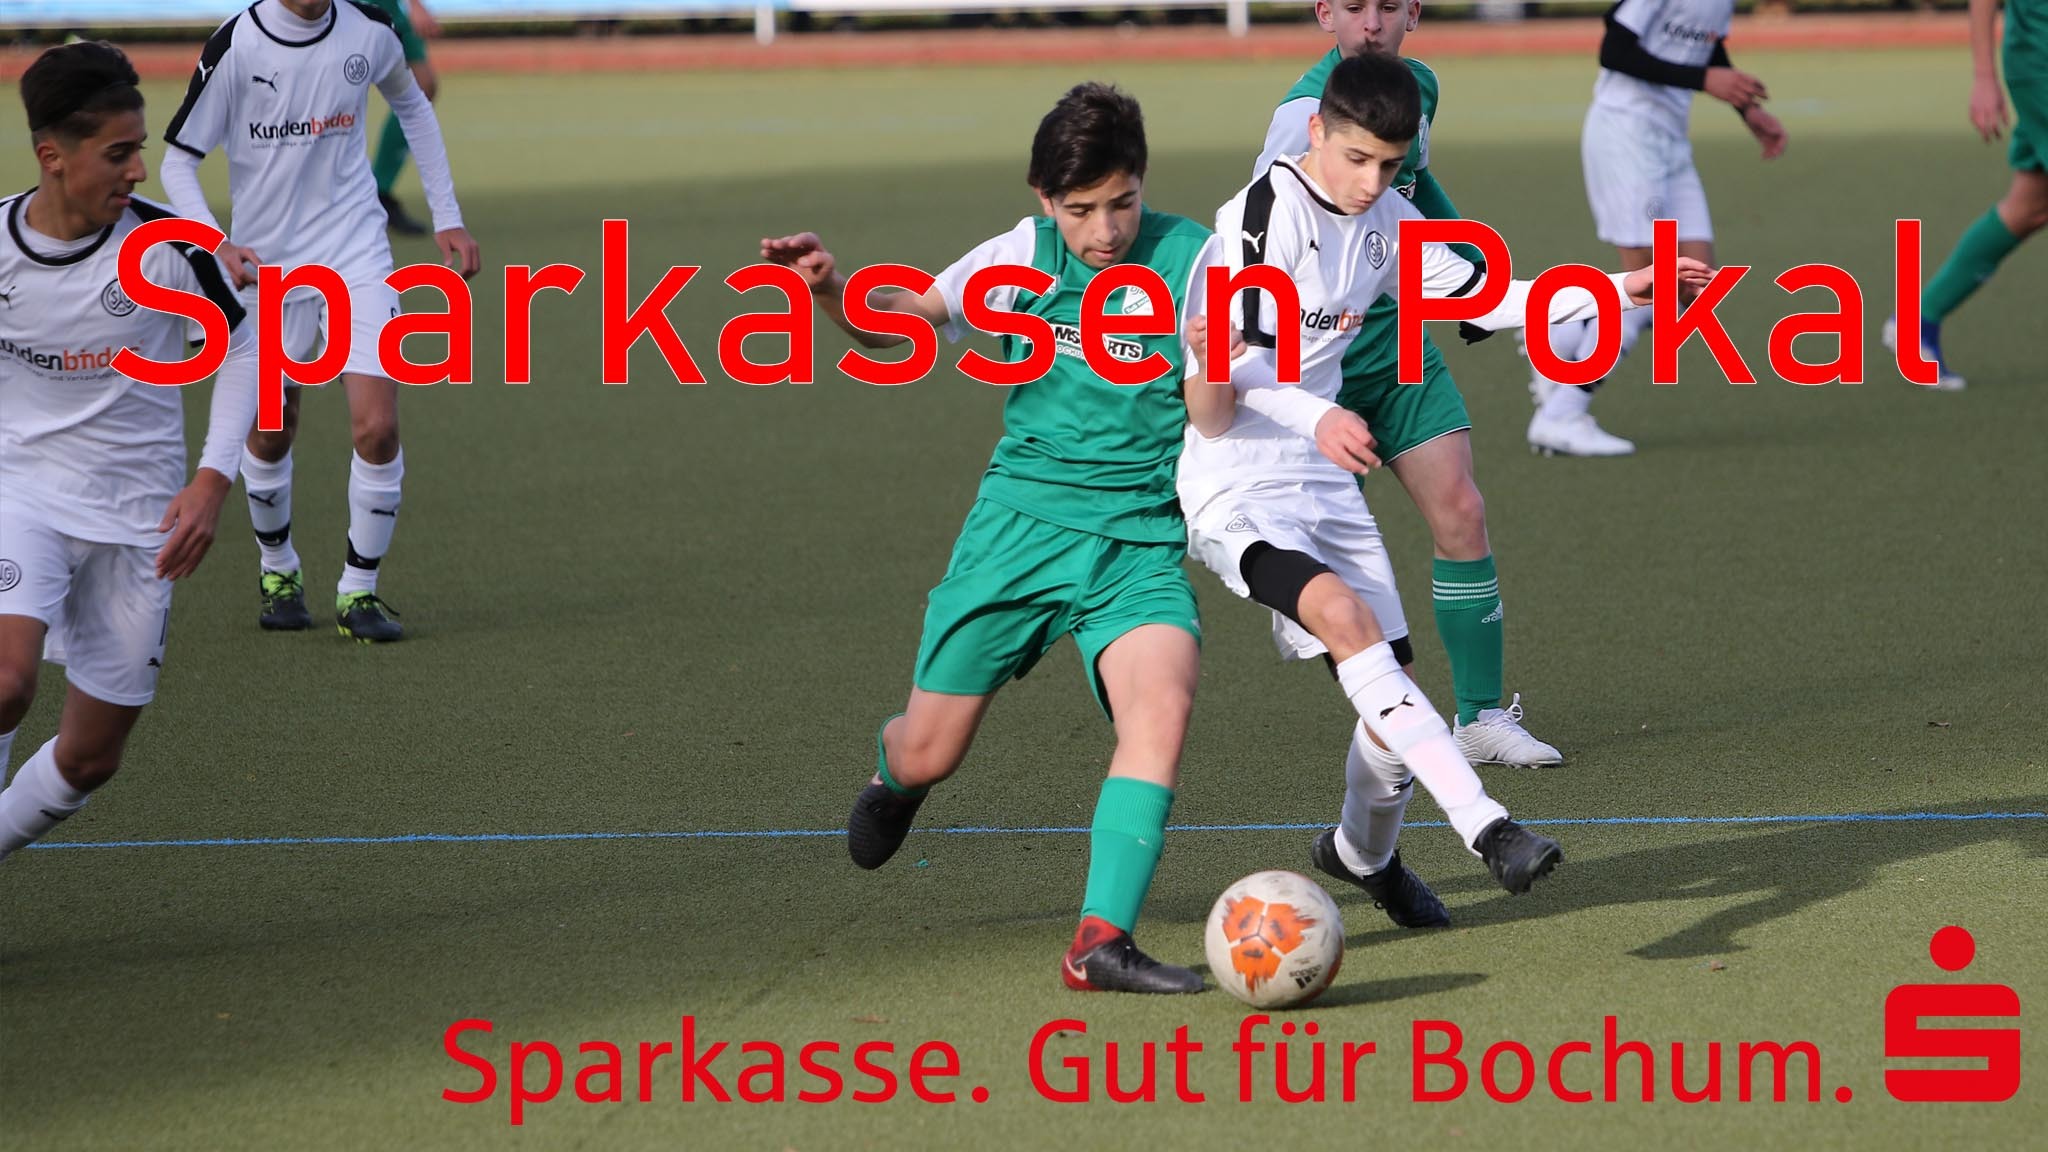 Fußball und Leichtathletik Verband Westfalen e.V.: Sparkassen - Pokal